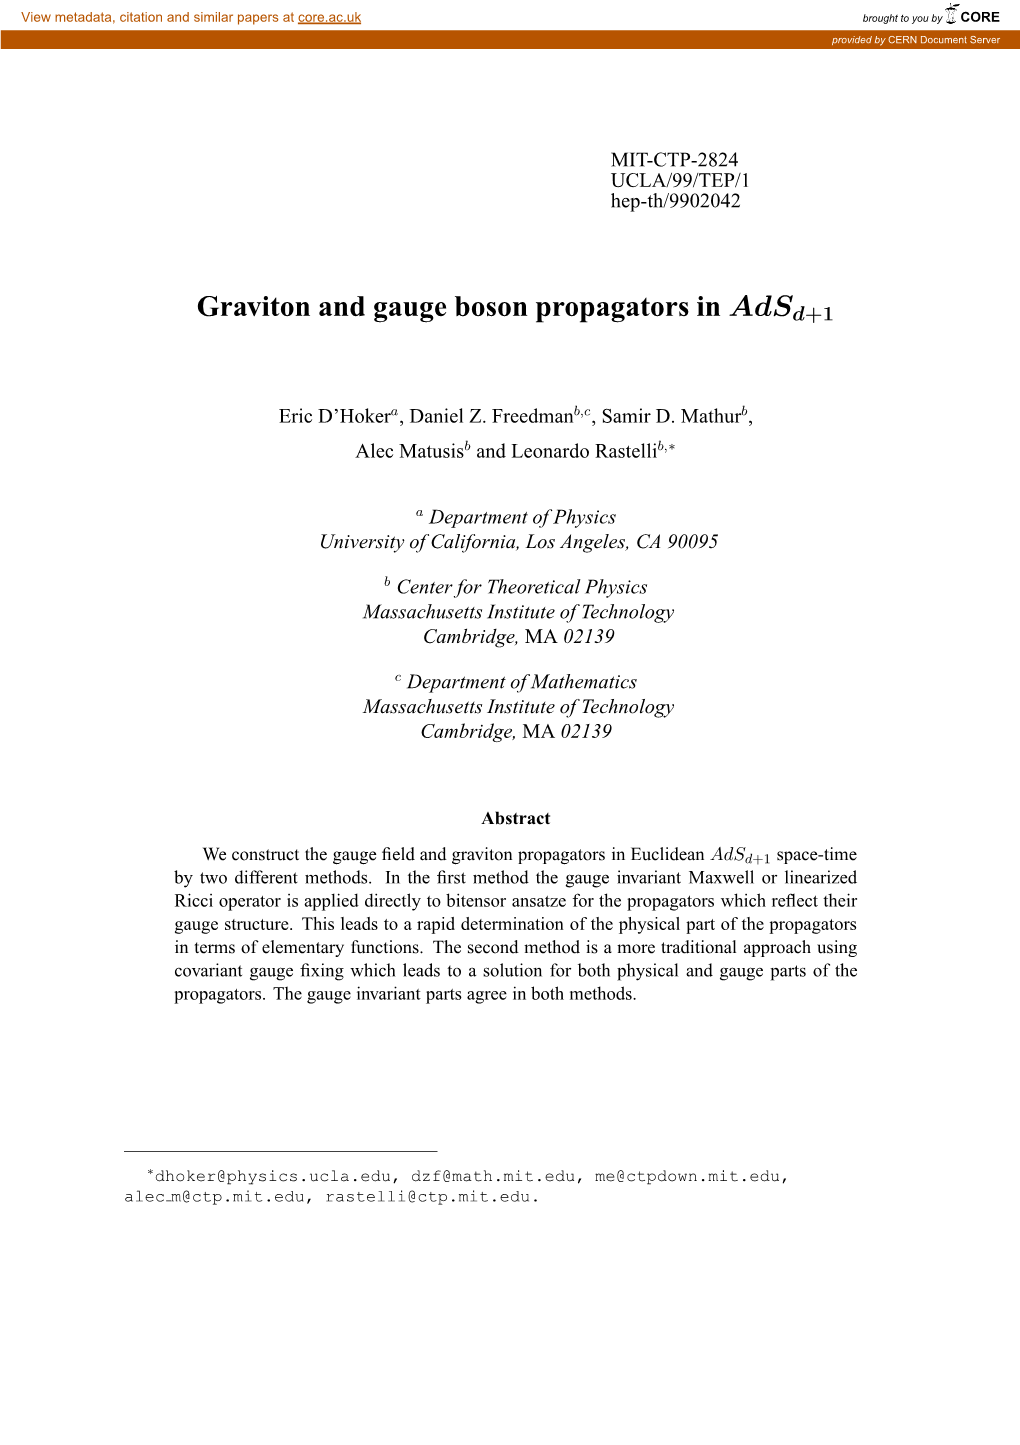 Graviton and Gauge Boson Propagators in Adsd+1